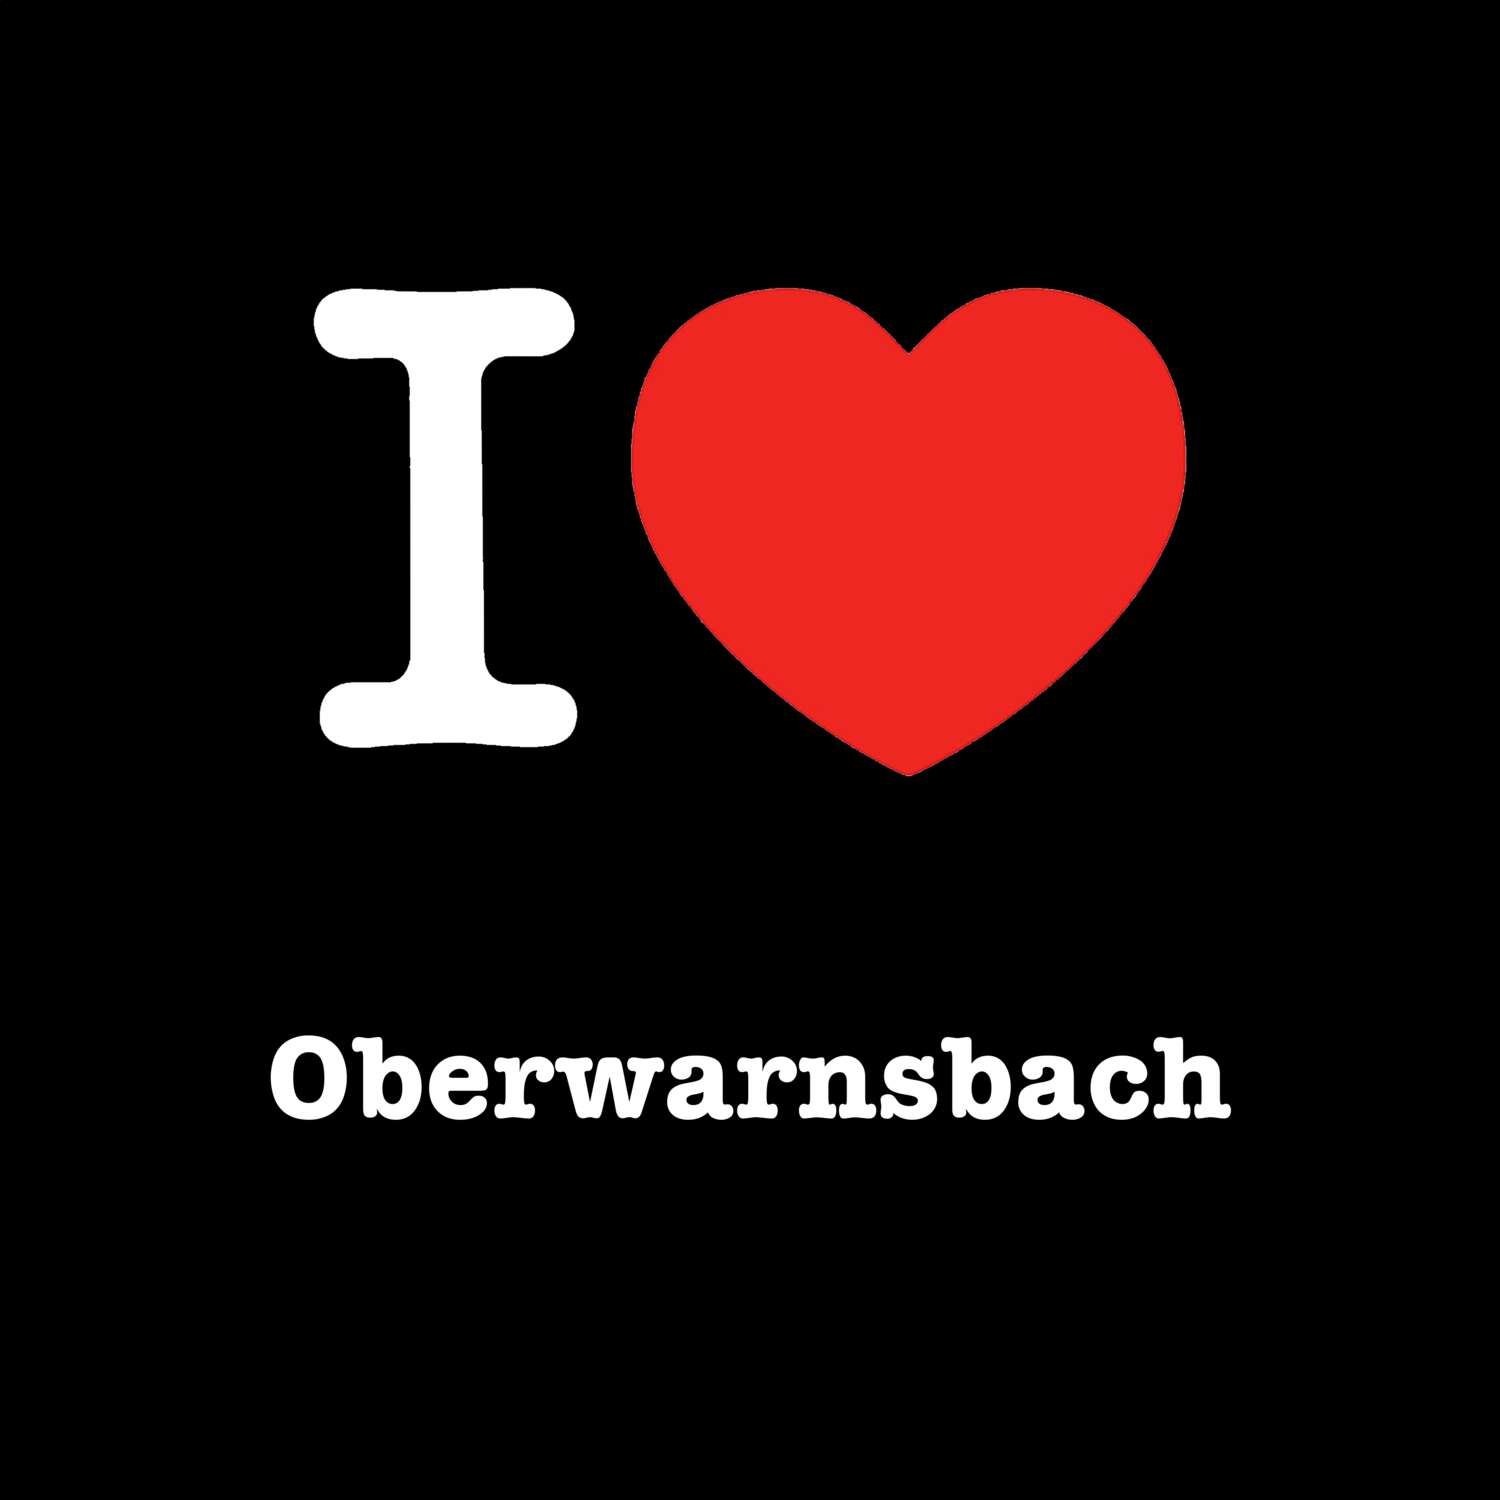 Oberwarnsbach T-Shirt »I love«